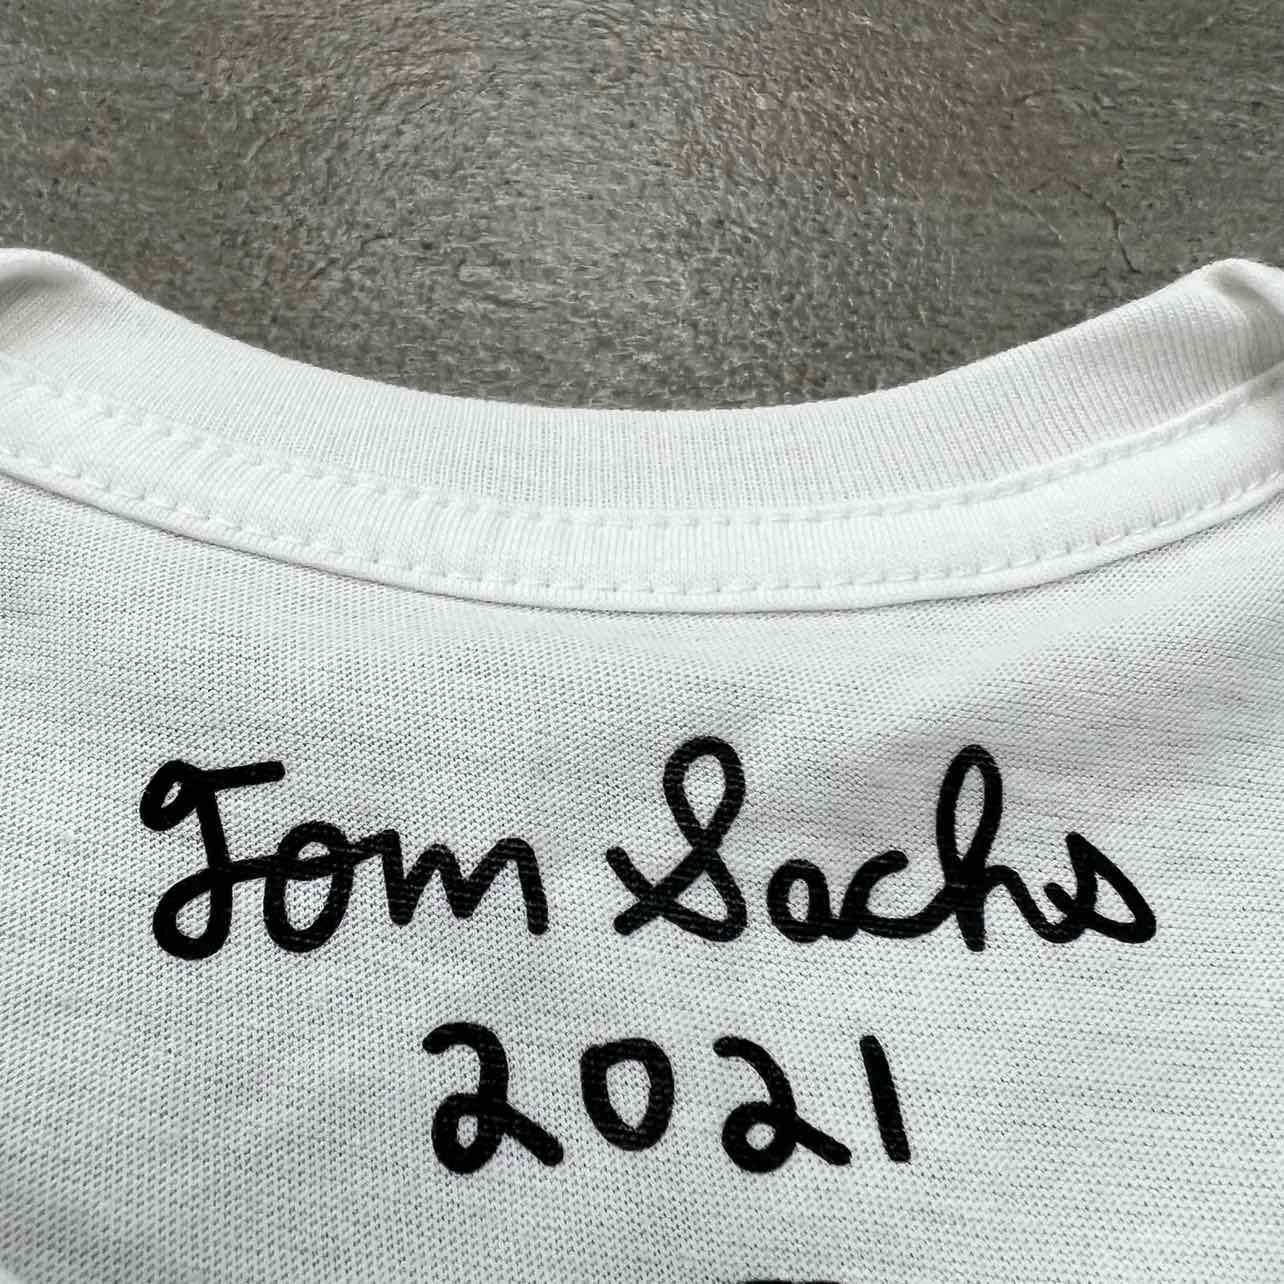 Tom Sachs T-Shirt "SSENSE" White New Size S